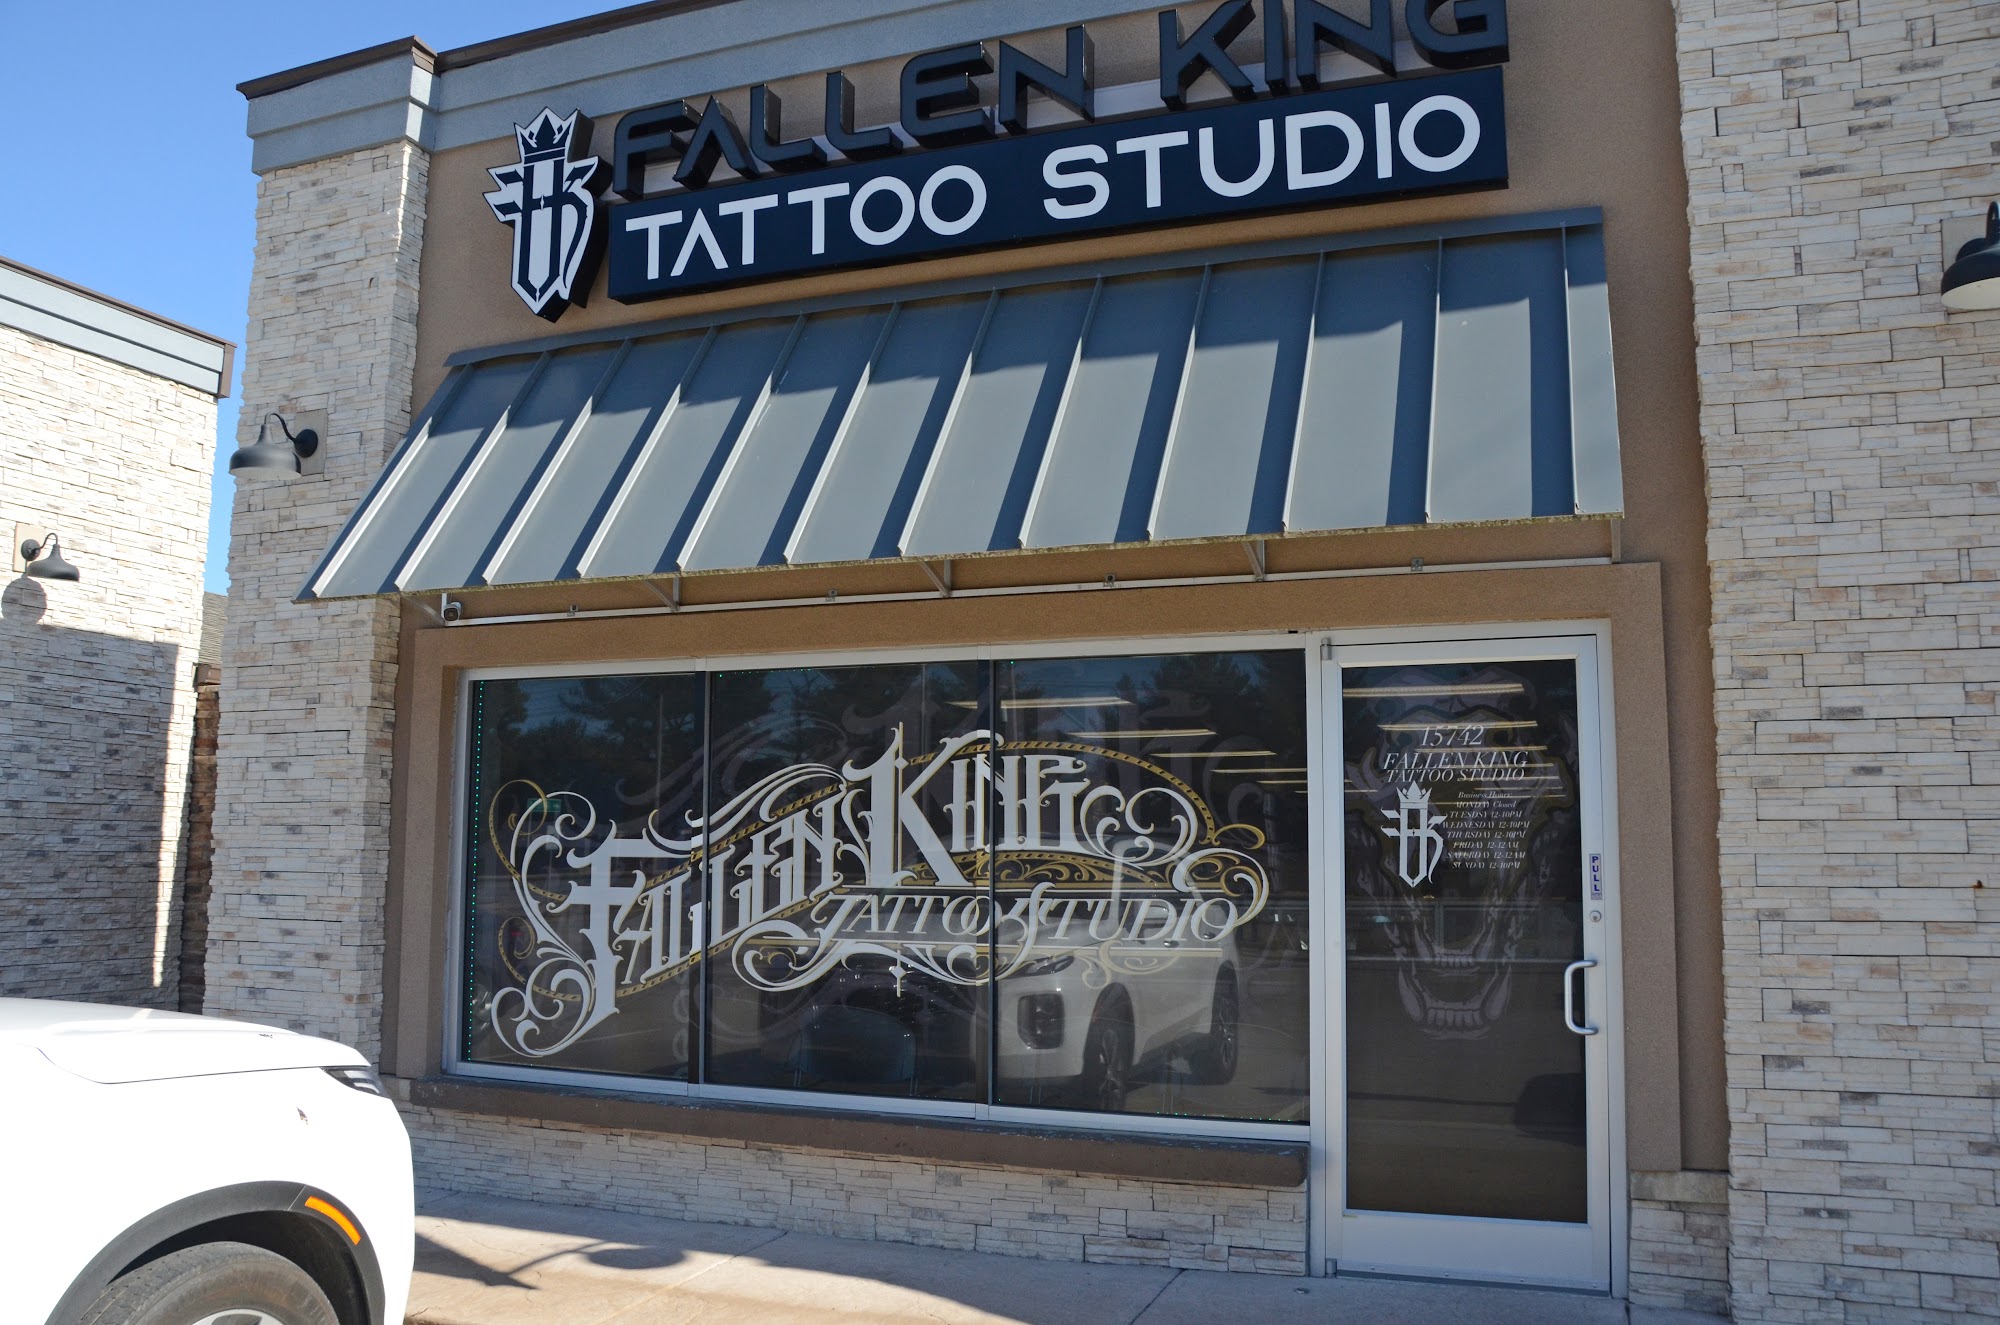 Fallen King Tattoo Studio